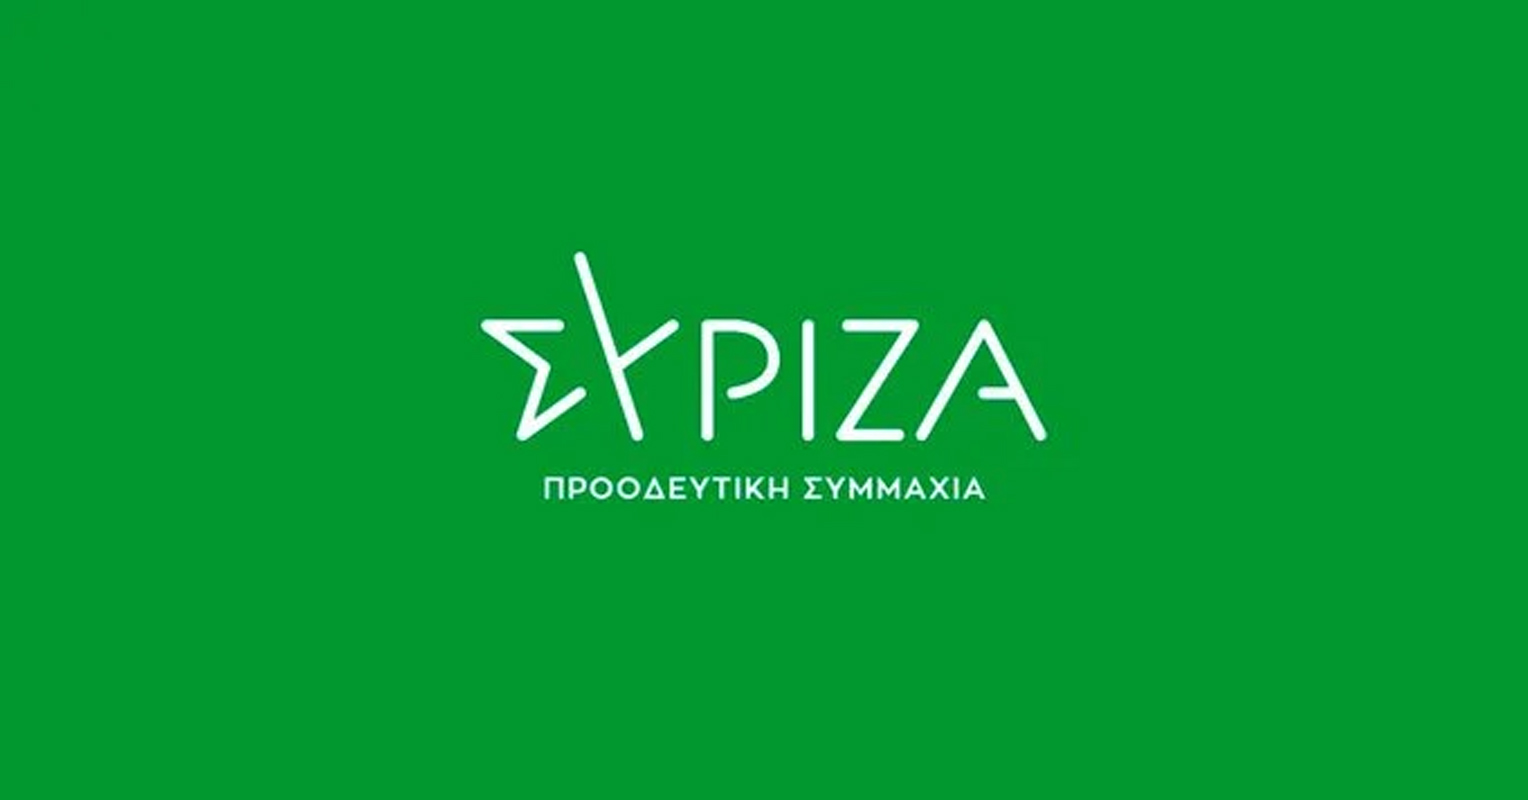 ΣΥΡΙΖΑ-ΠΣ: «Ο κ. Οικονόμου επιβεβαίωσε μέχρι κεραίας το ρεπορτάζ του politico - Μνημείο πολιτικού επαρχιωτισμού και καθεστωτισμού η απάντησή του»